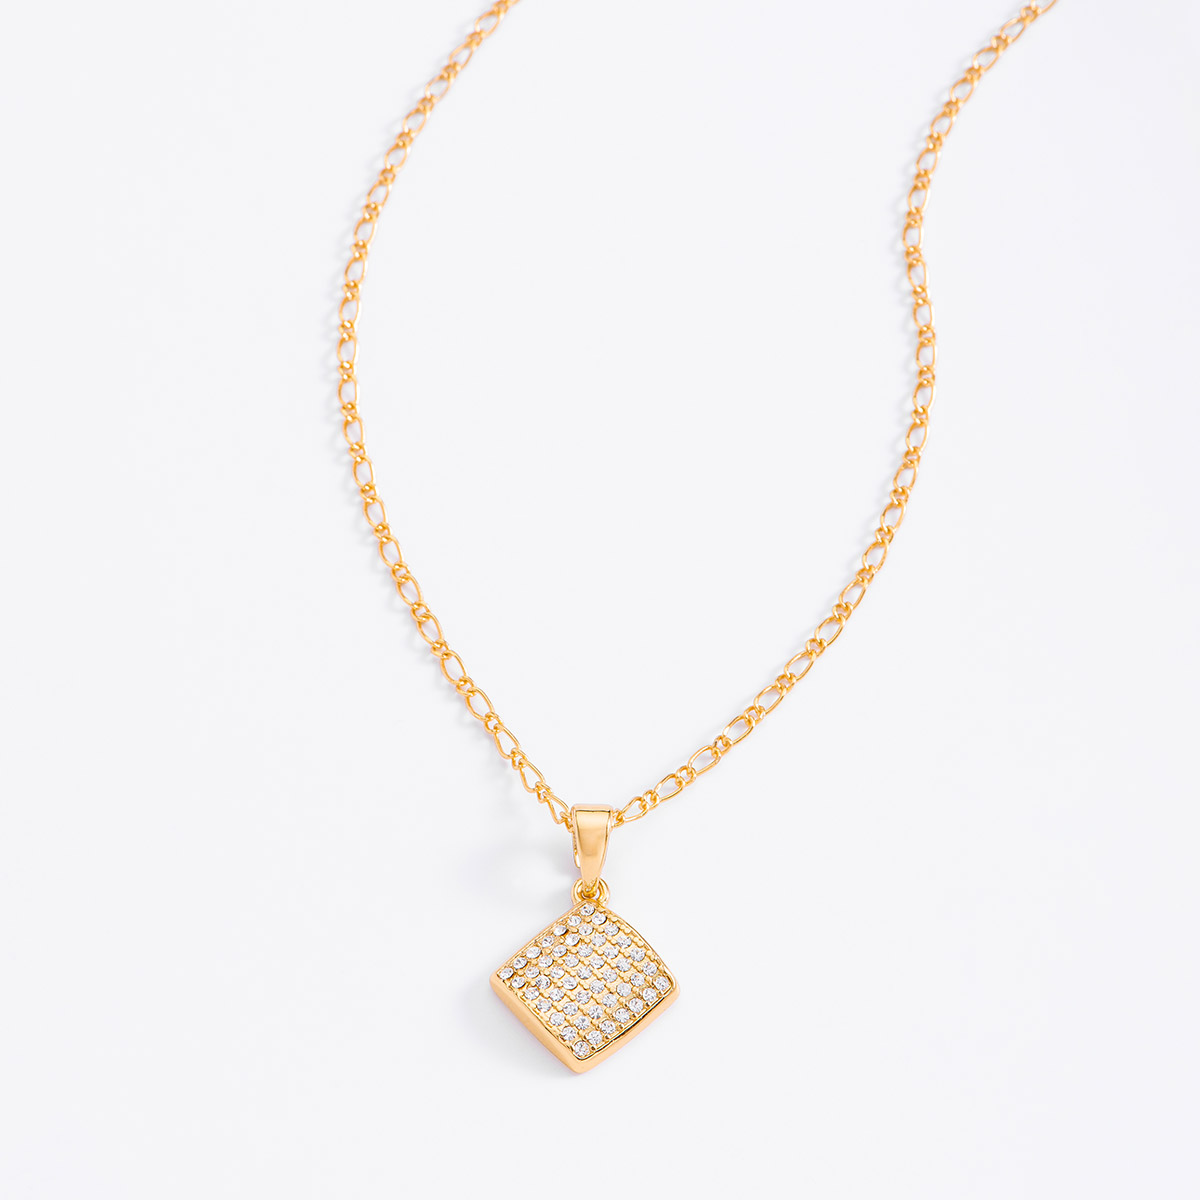 La distinción y elegancia caracterizan a este collar dorado en forma de rombo, con piedras en tono cristal. 
-Collar con dije
-42 cm + 10 ext.
-Oro 18K